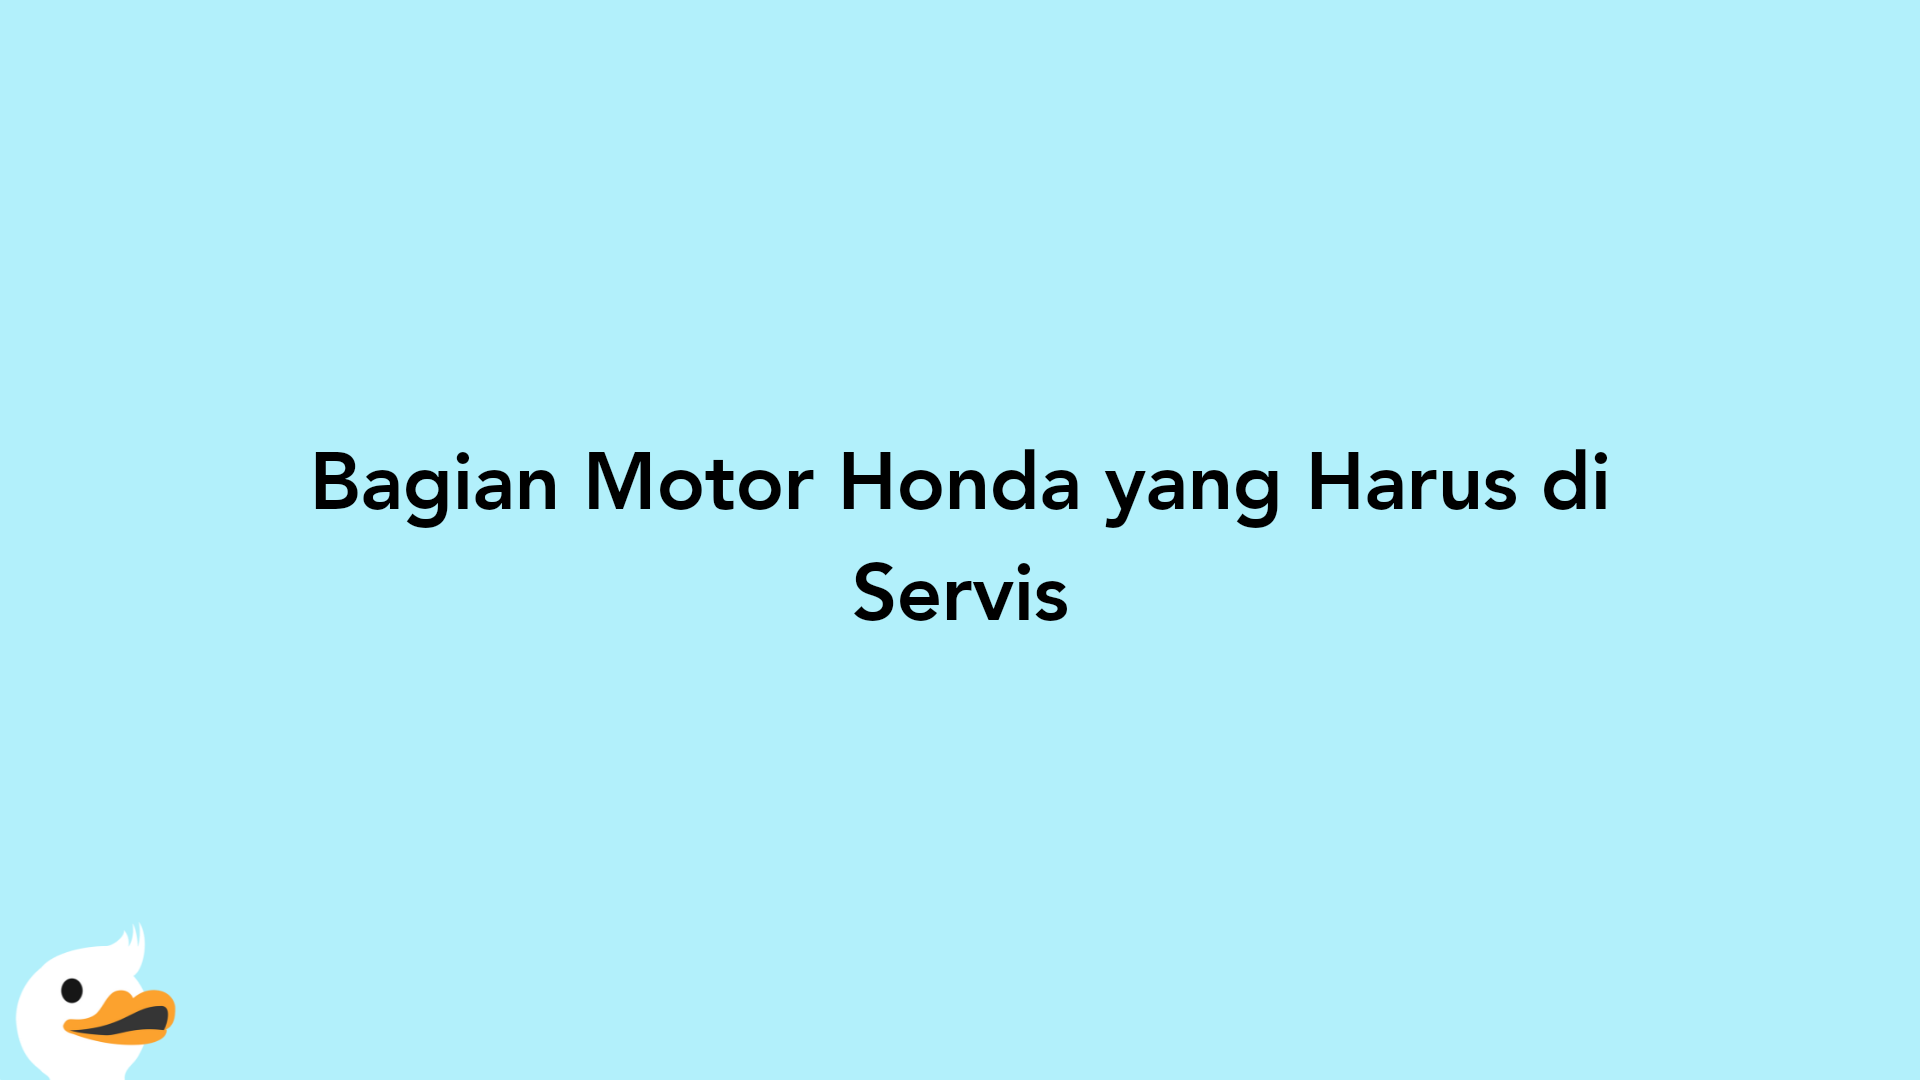 Bagian Motor Honda yang Harus di Servis